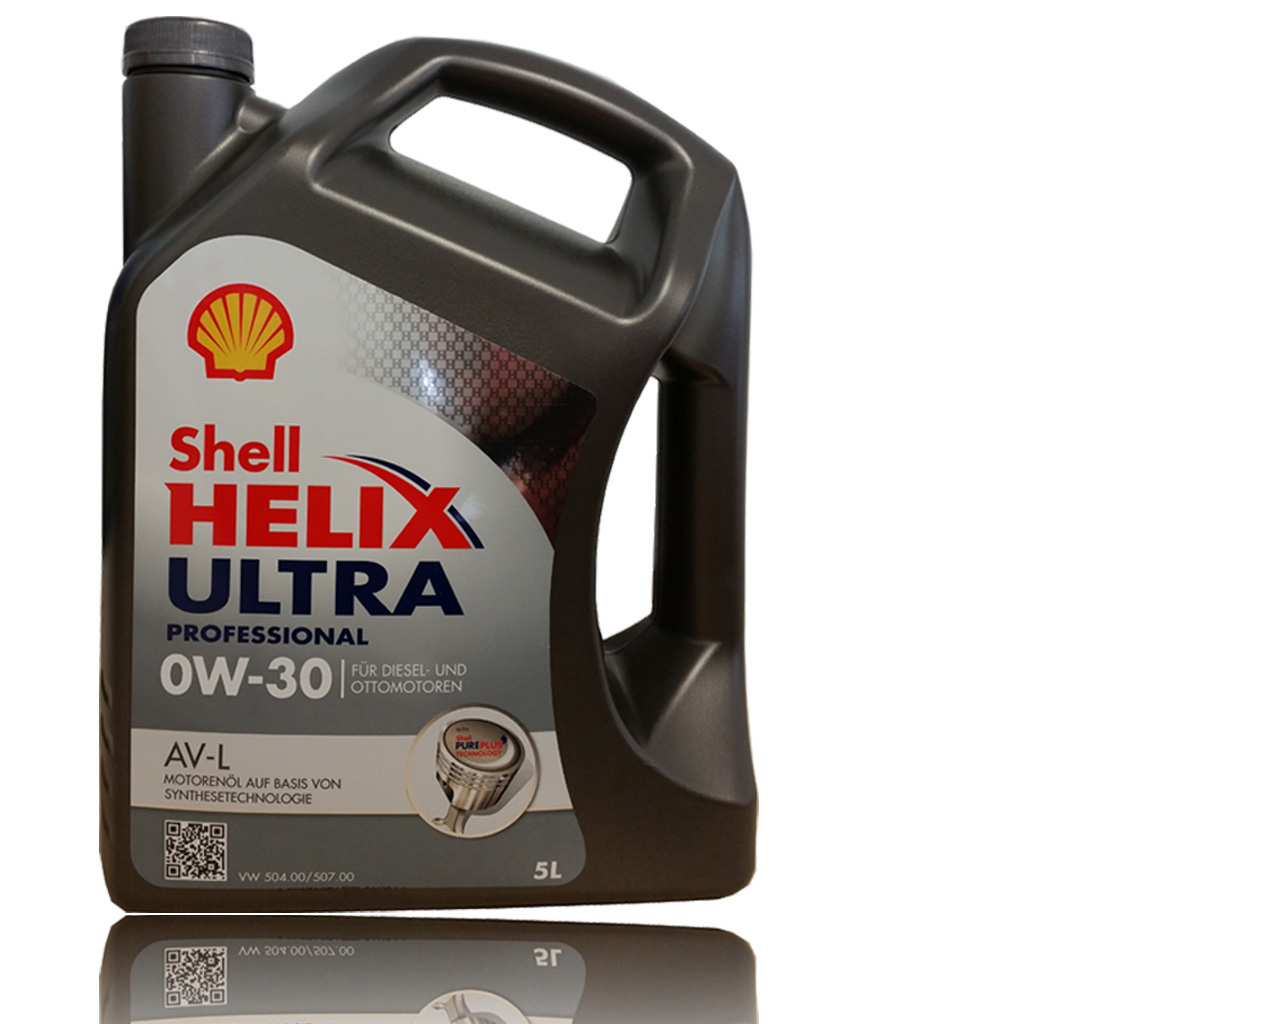 Купить масло 5w30 504 507. Helix Ultra professional av-l 0w-30. Shell Helix Ultra 0w-30 504/507. Shell Helix Ultra av 0w-30. VW 504.00/507.00 Shell.